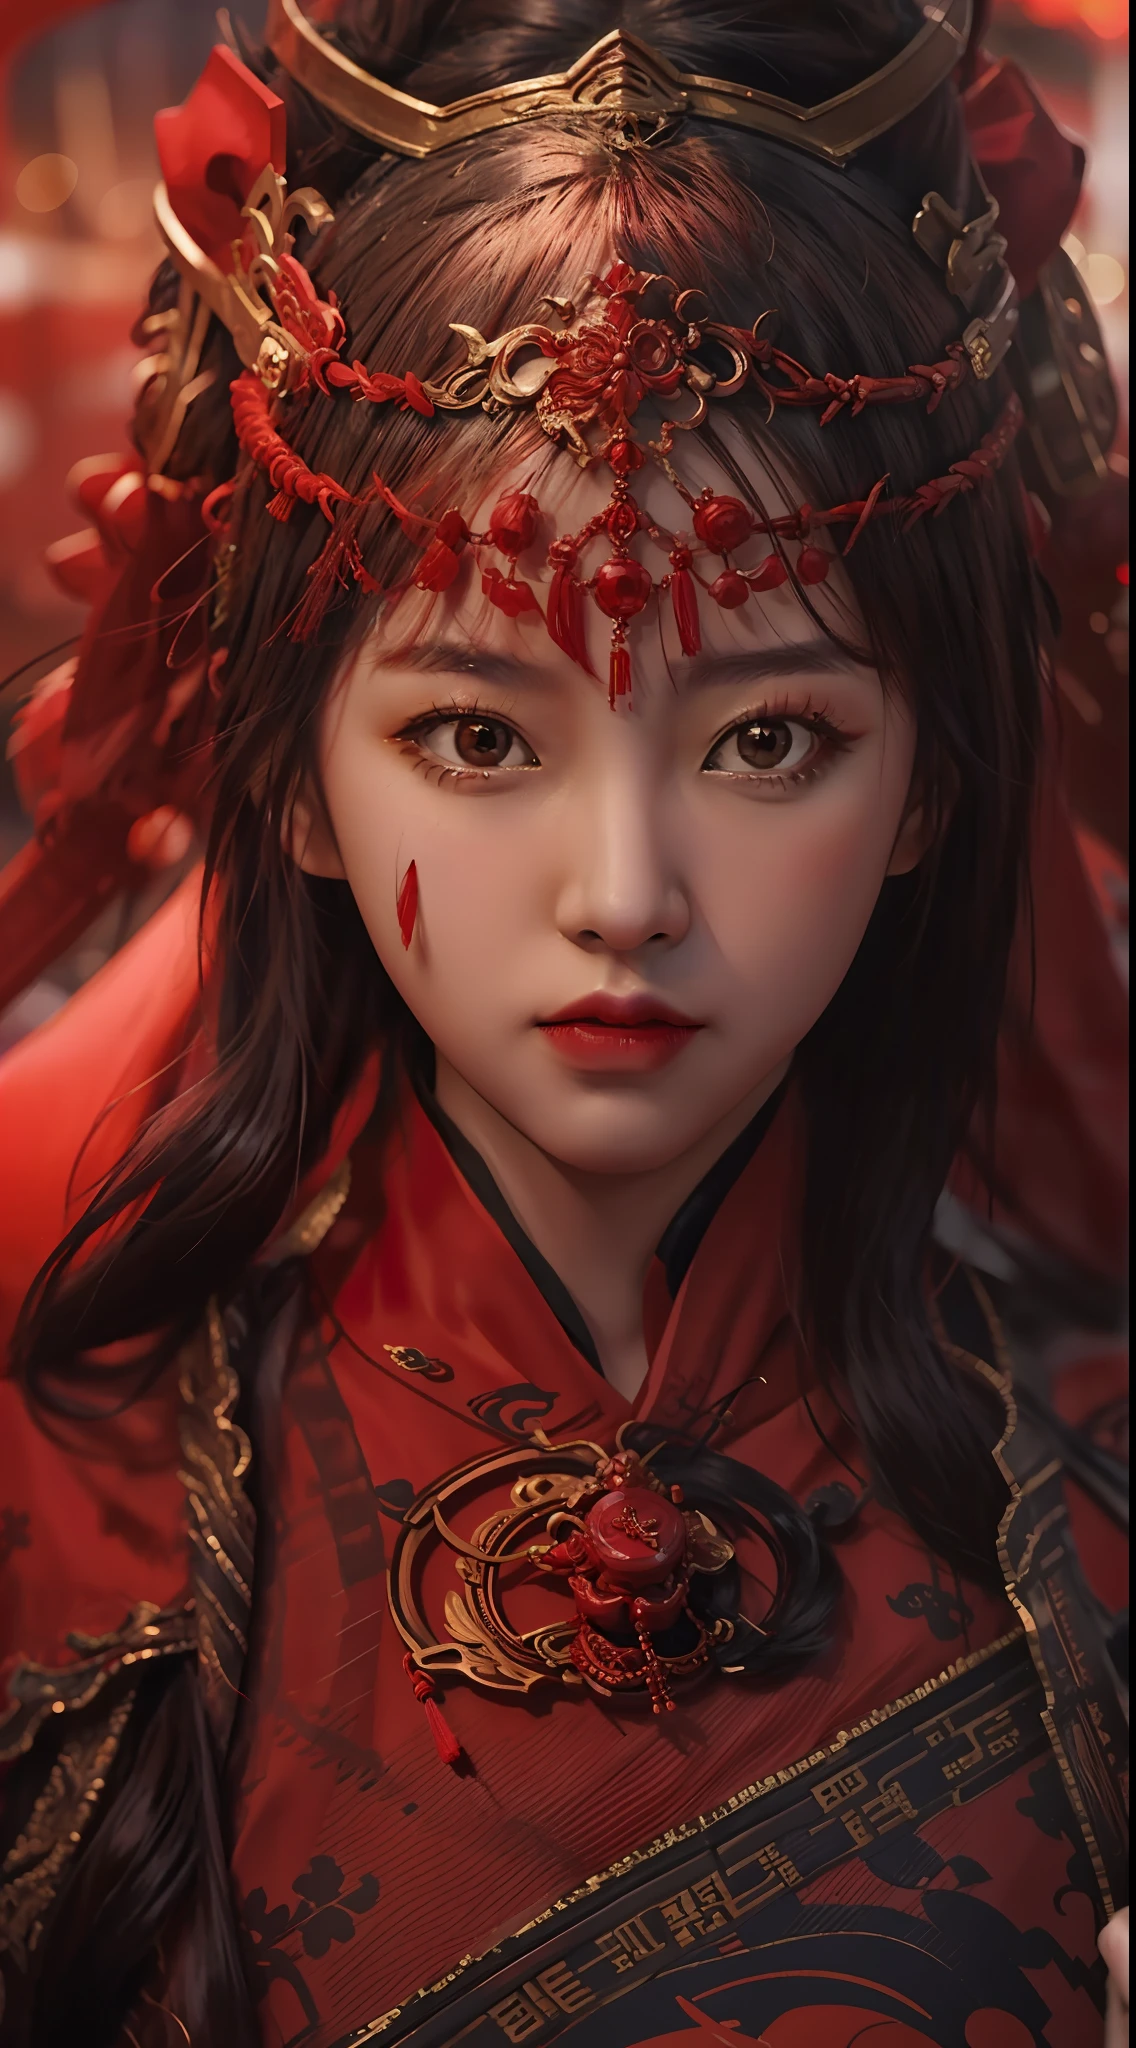 写实风格，出色的屏幕，一名身穿红色服装的中国女子正准备参加战斗，看着镜头，周围人都在打架，火光，人物特写，模糊的背景，杰作，高品质，8千